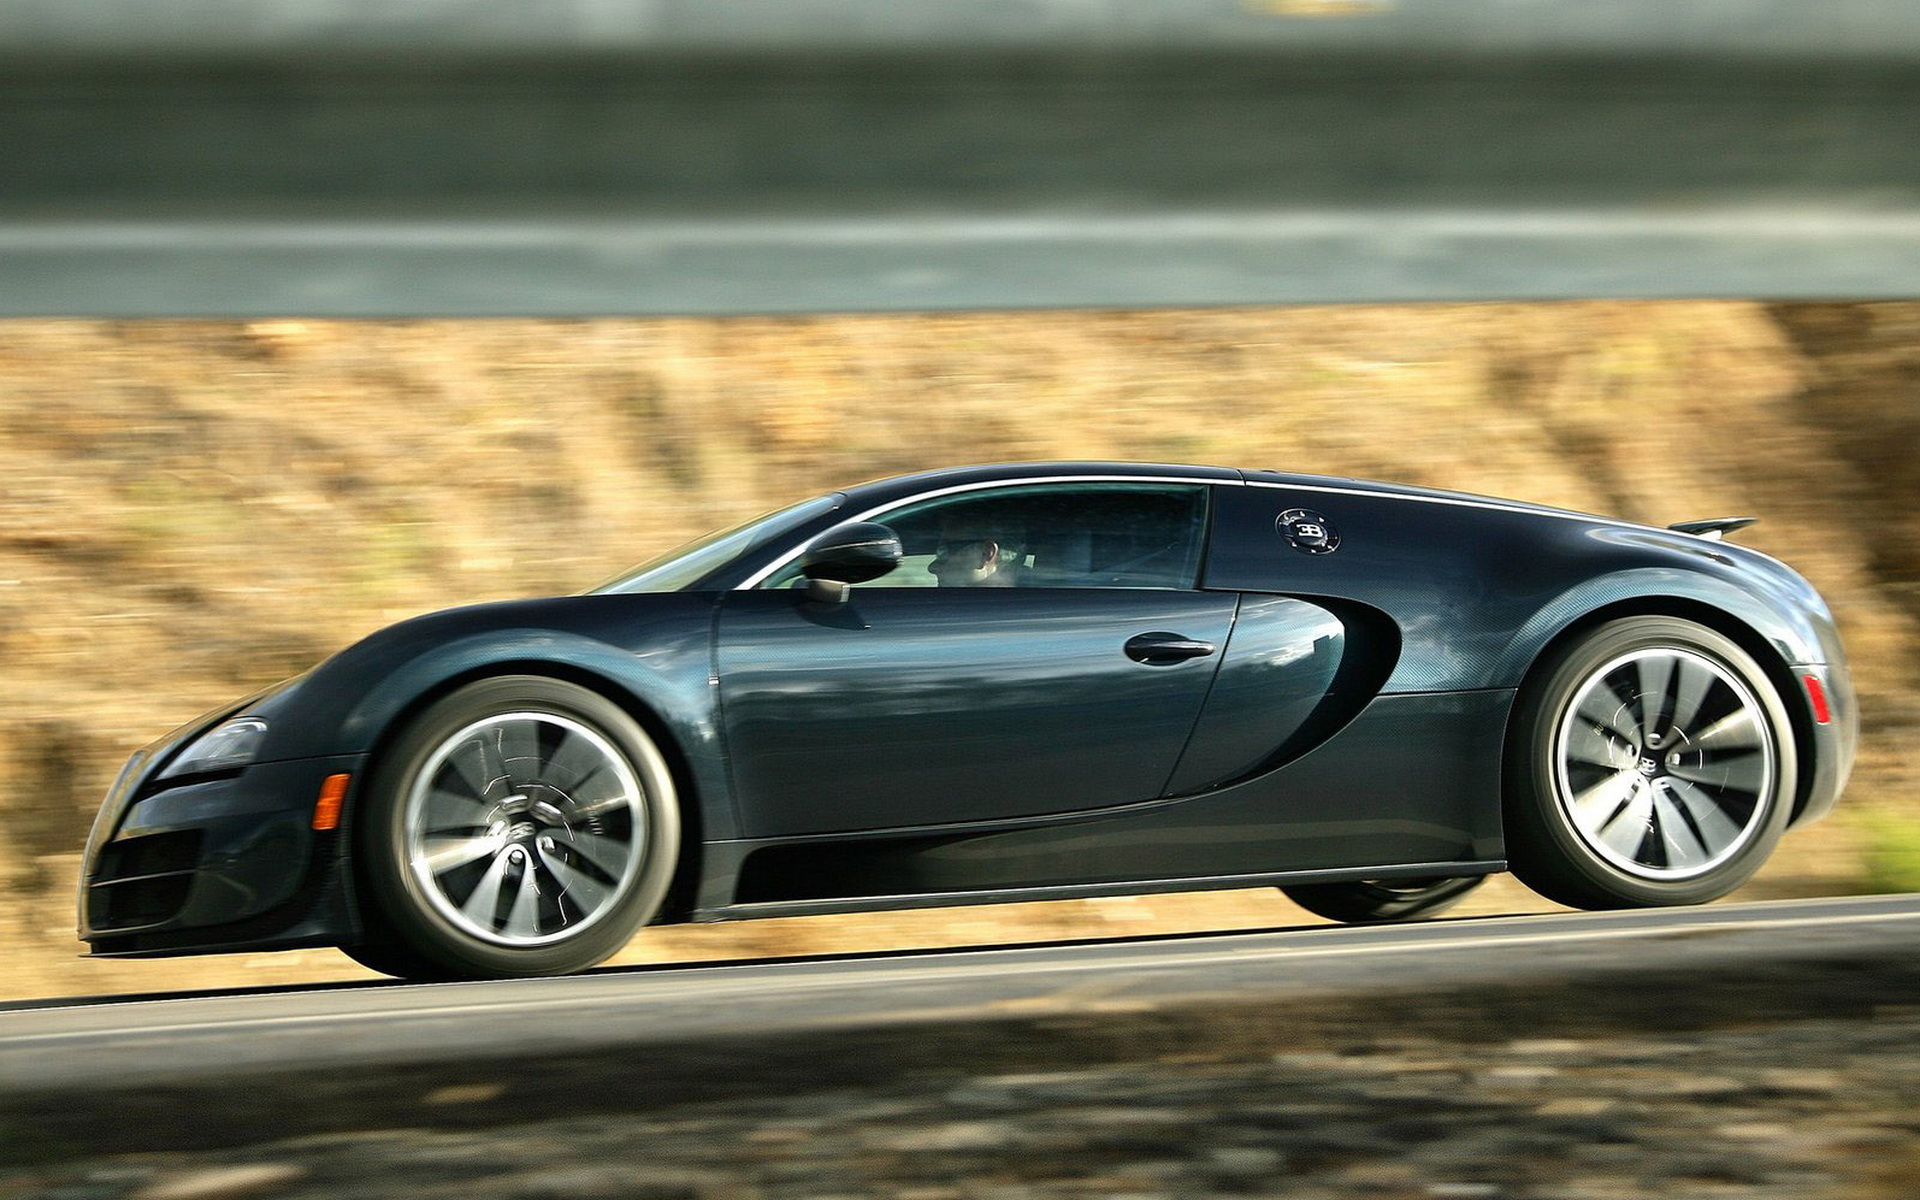 Previous Auto Bugatti